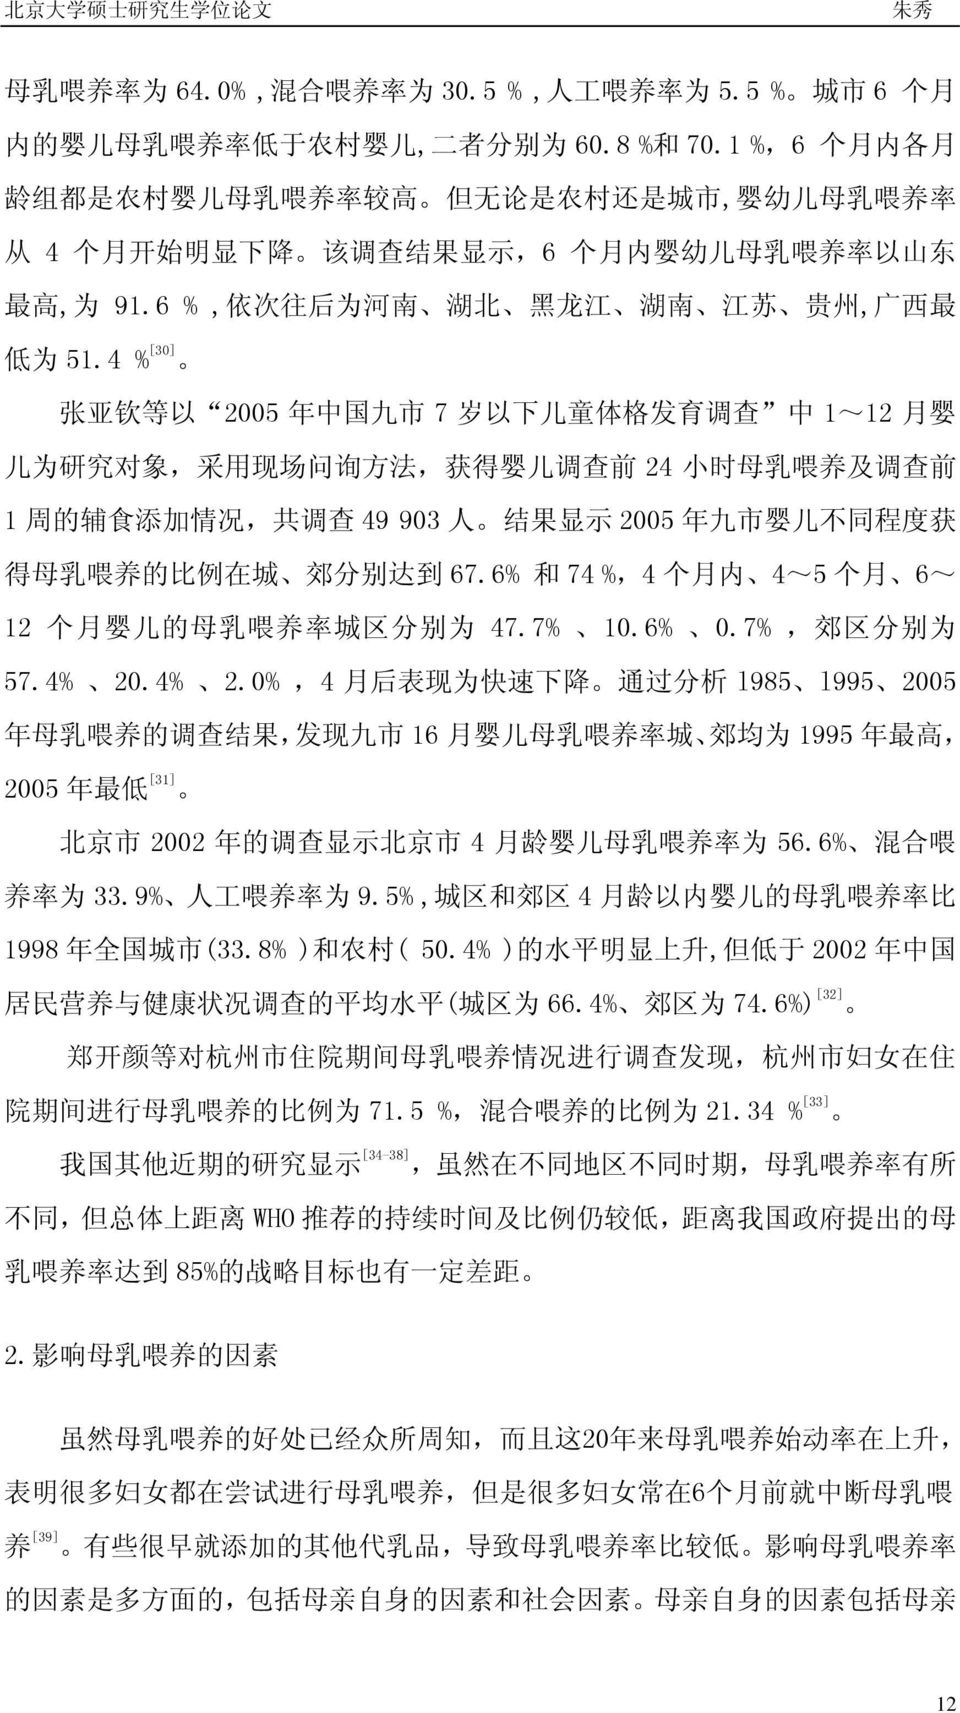 6 %, 依 次 往 后 为 河 南 湖 北 黑 龙 江 湖 南 江 苏 贵 州, 广 西 最 低 为 51.